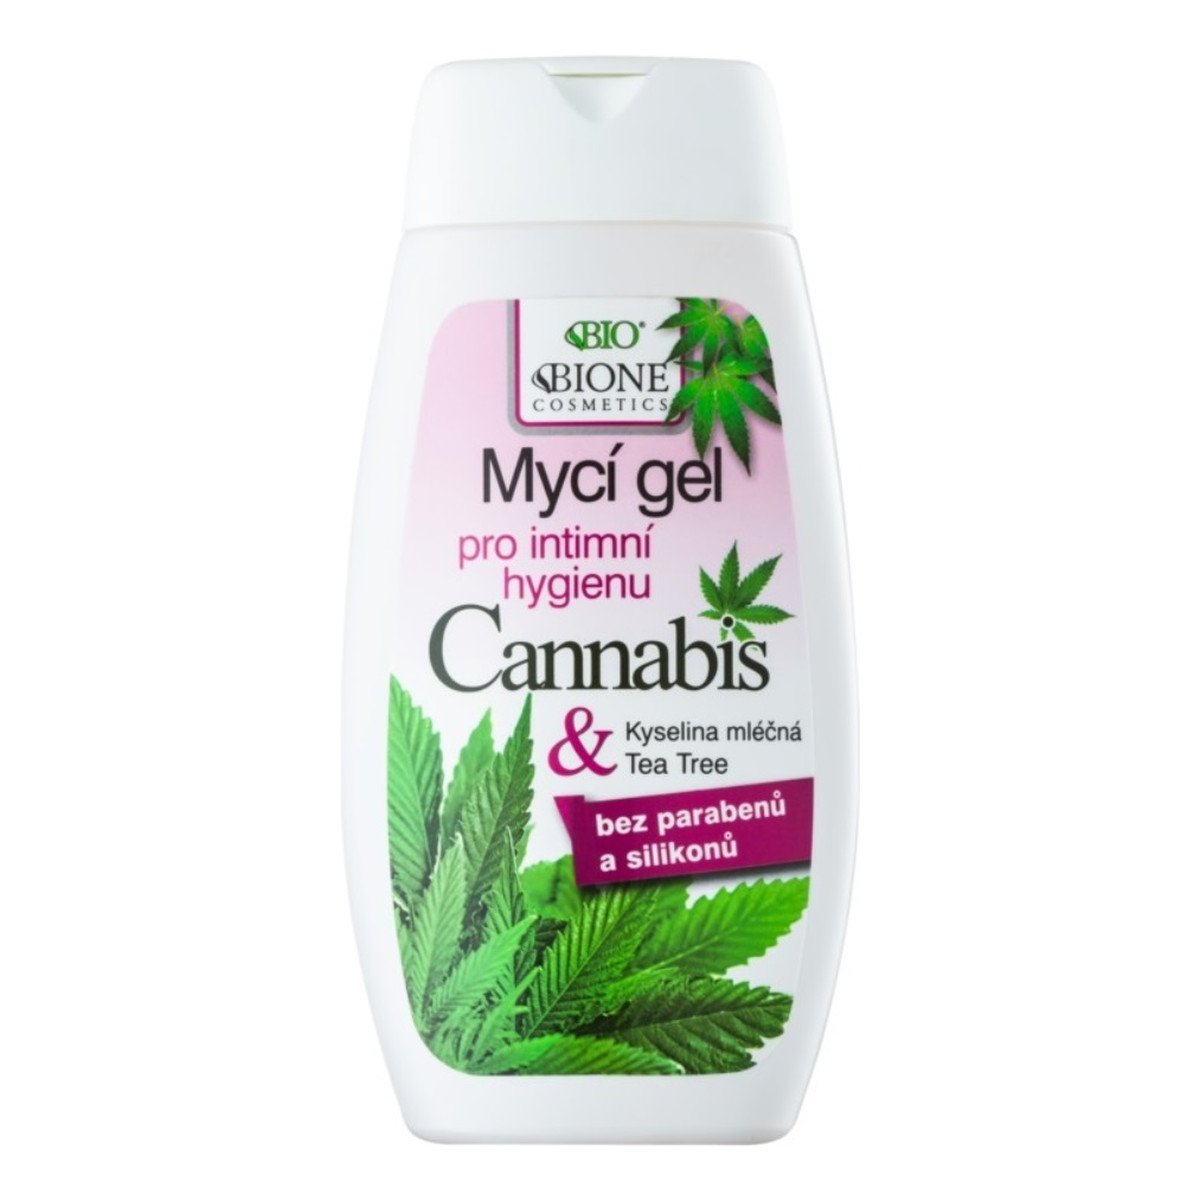 Bione Cannabis żel do higieny intymnej z kwasem mlekowym i olejkiem z drzewa herbacianego 260ml